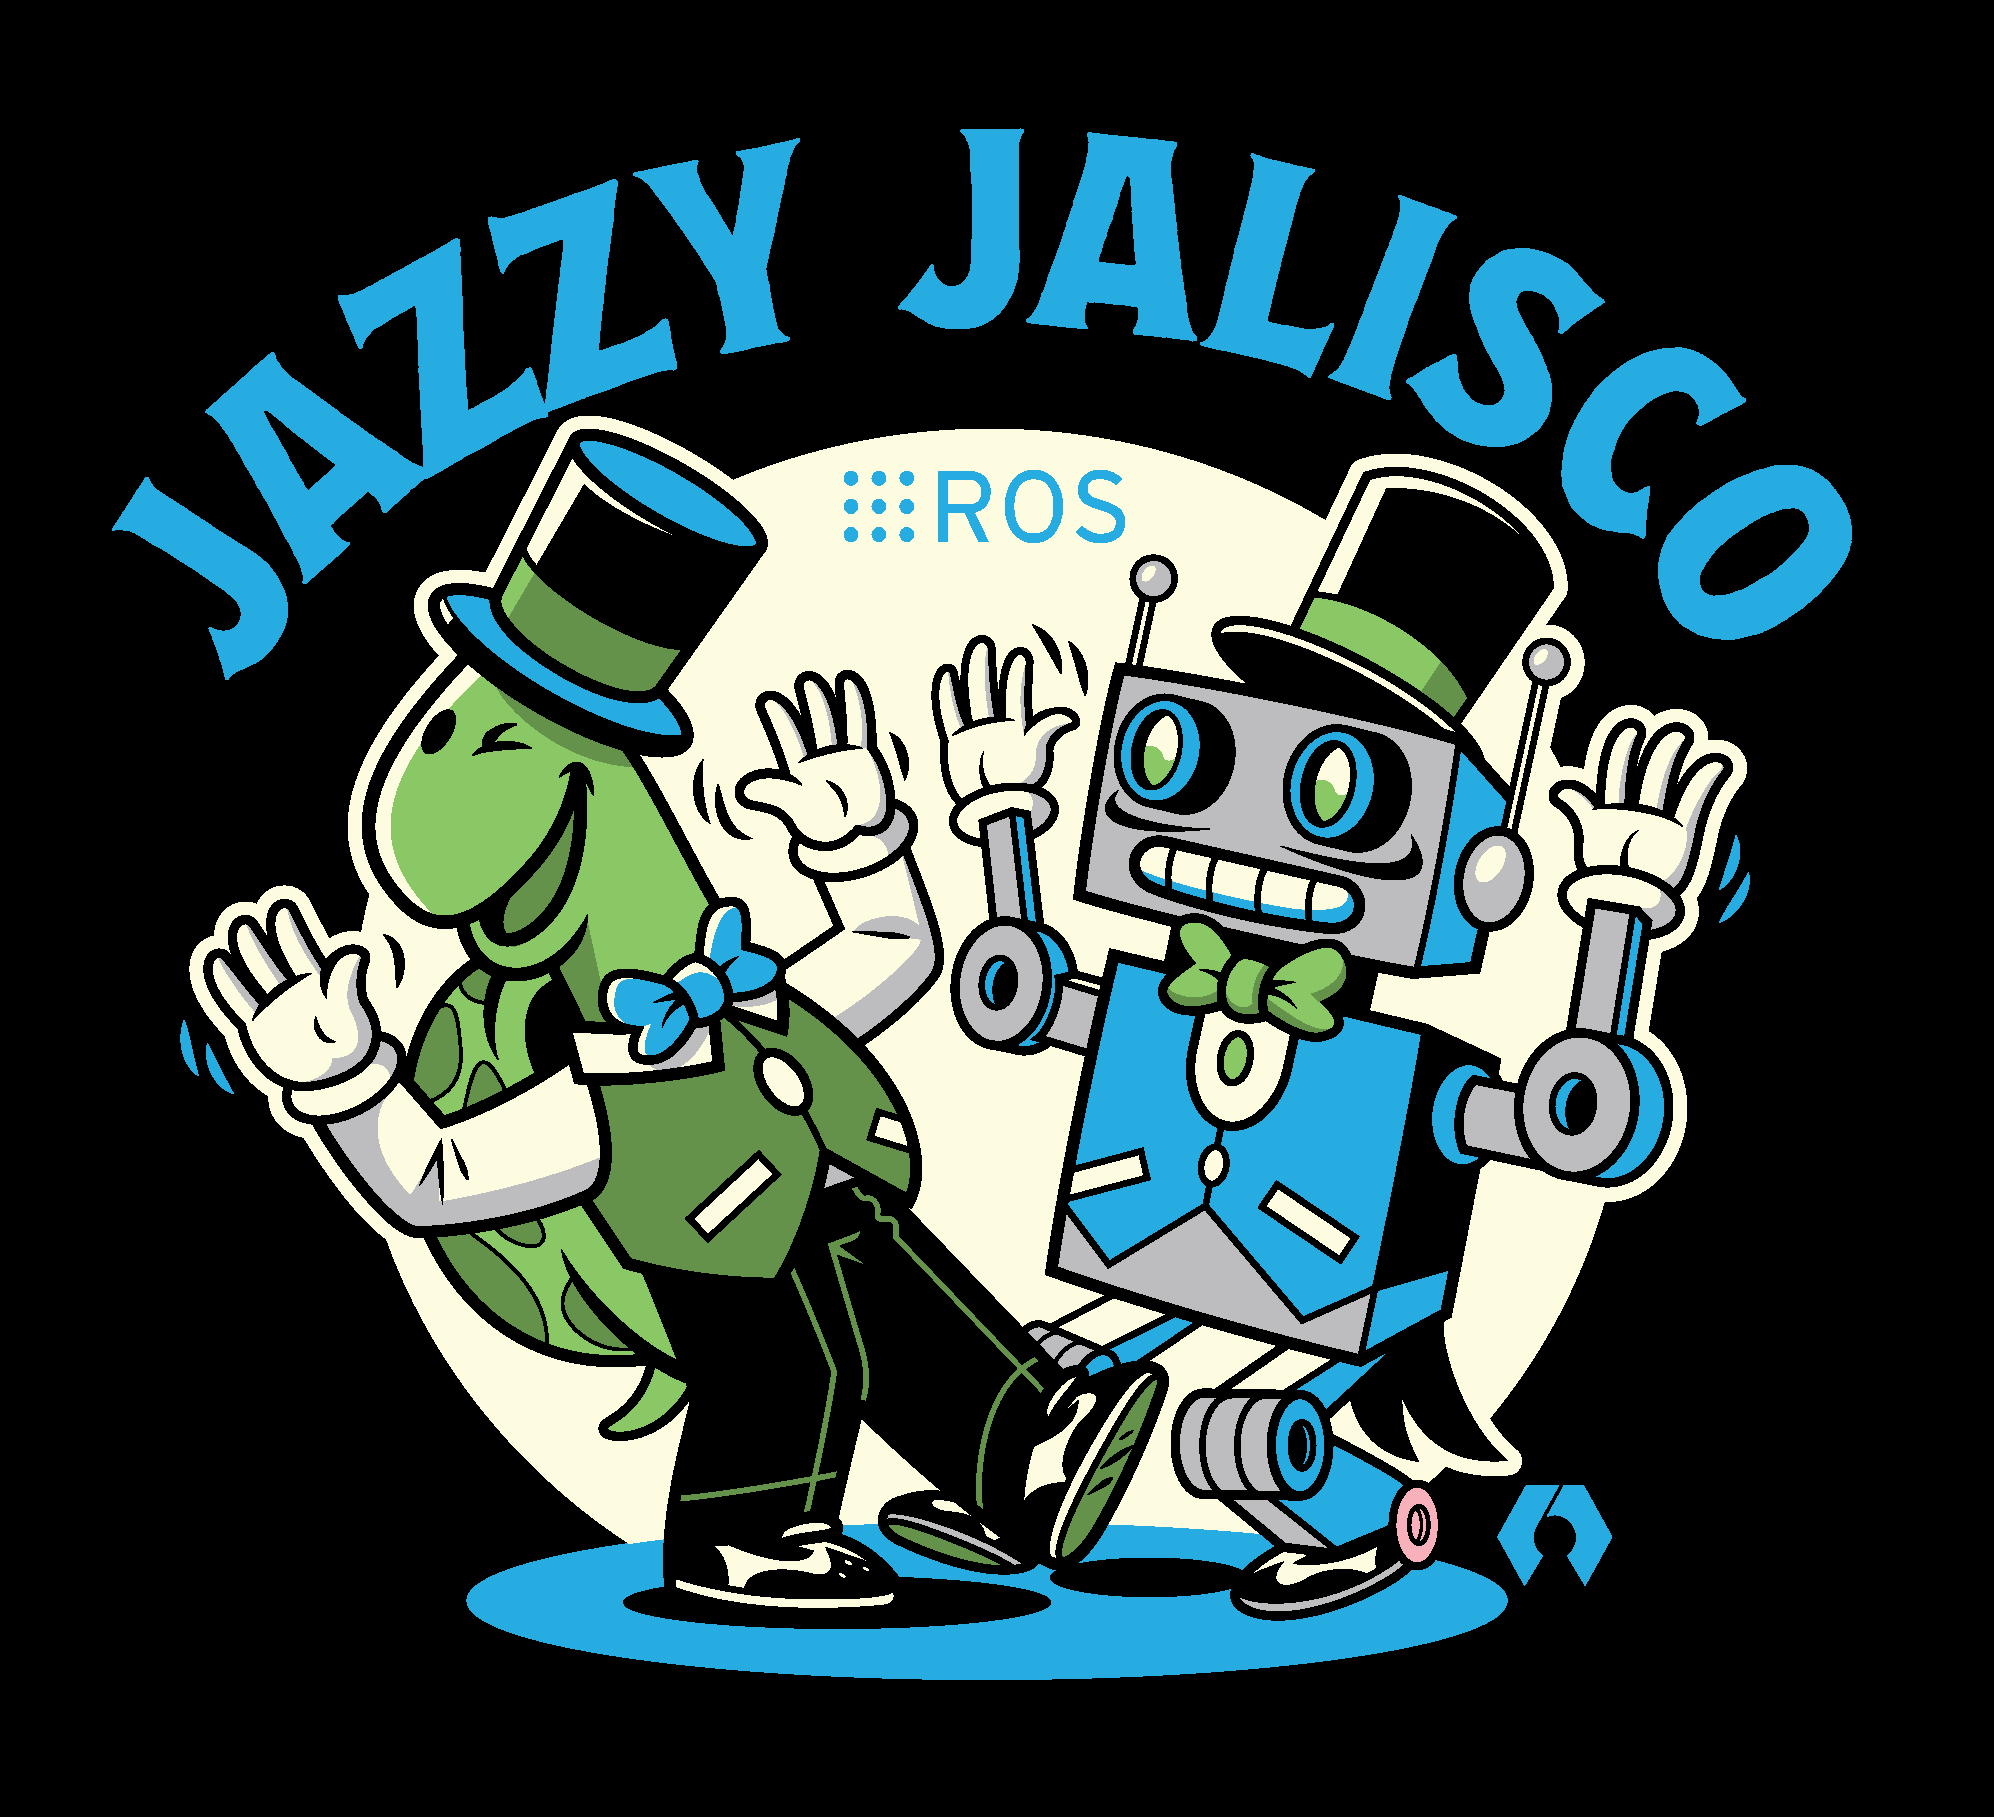 Jazzy Jalisco